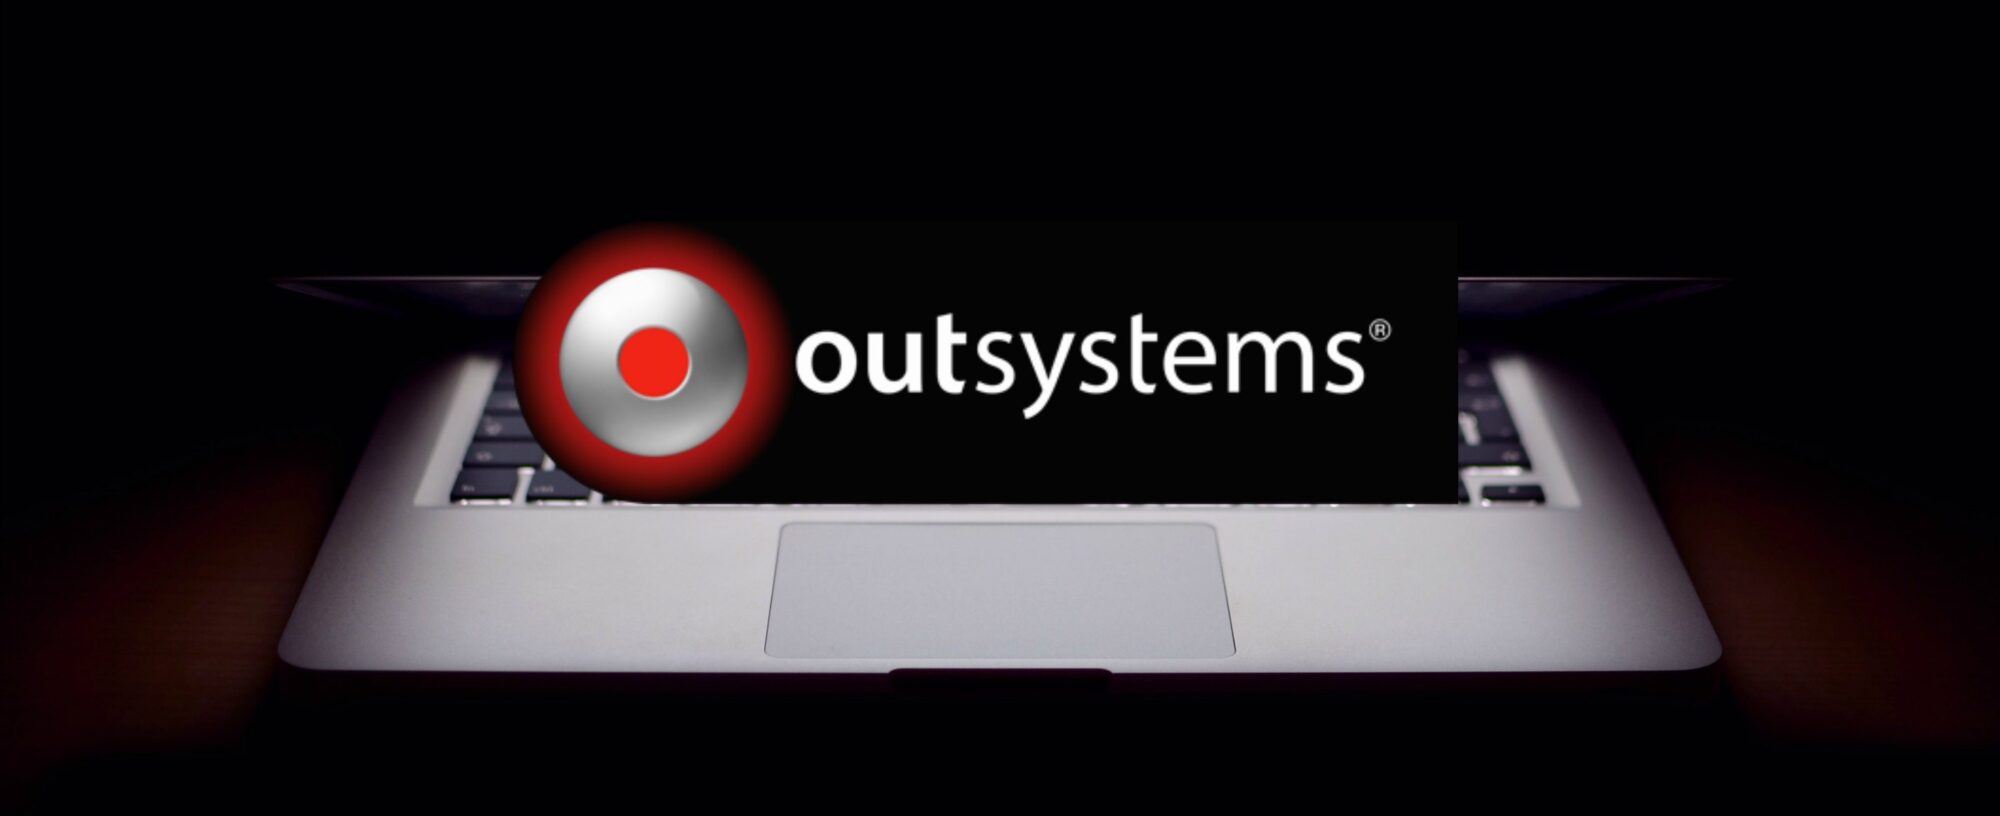 OutSystems 11 löser problemen med förlegade system